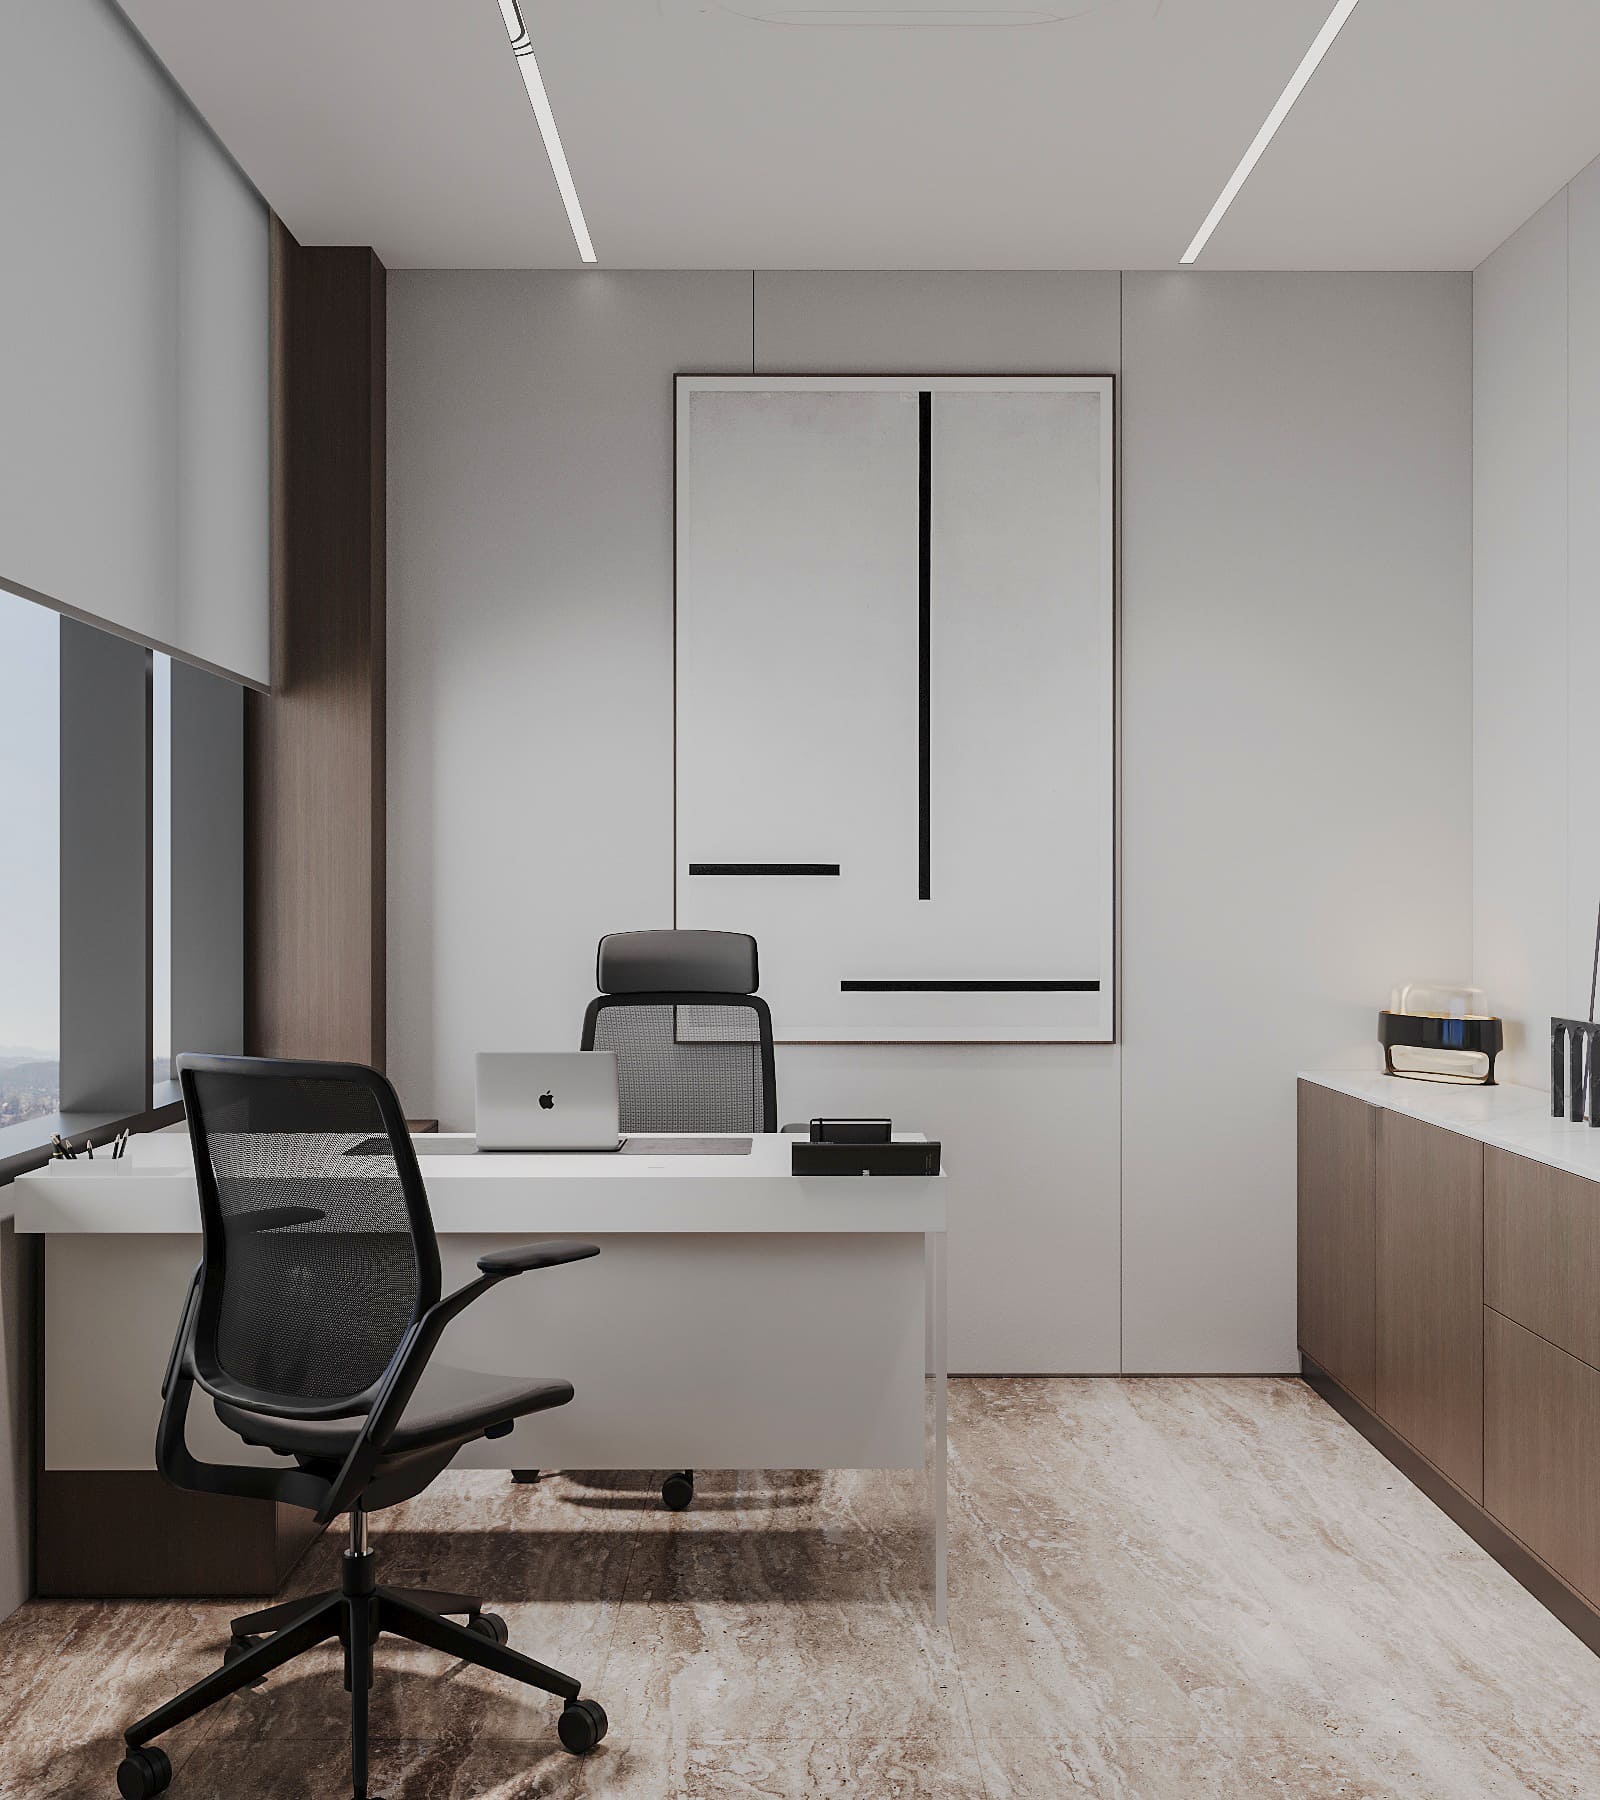 Furniture in a modern office 1